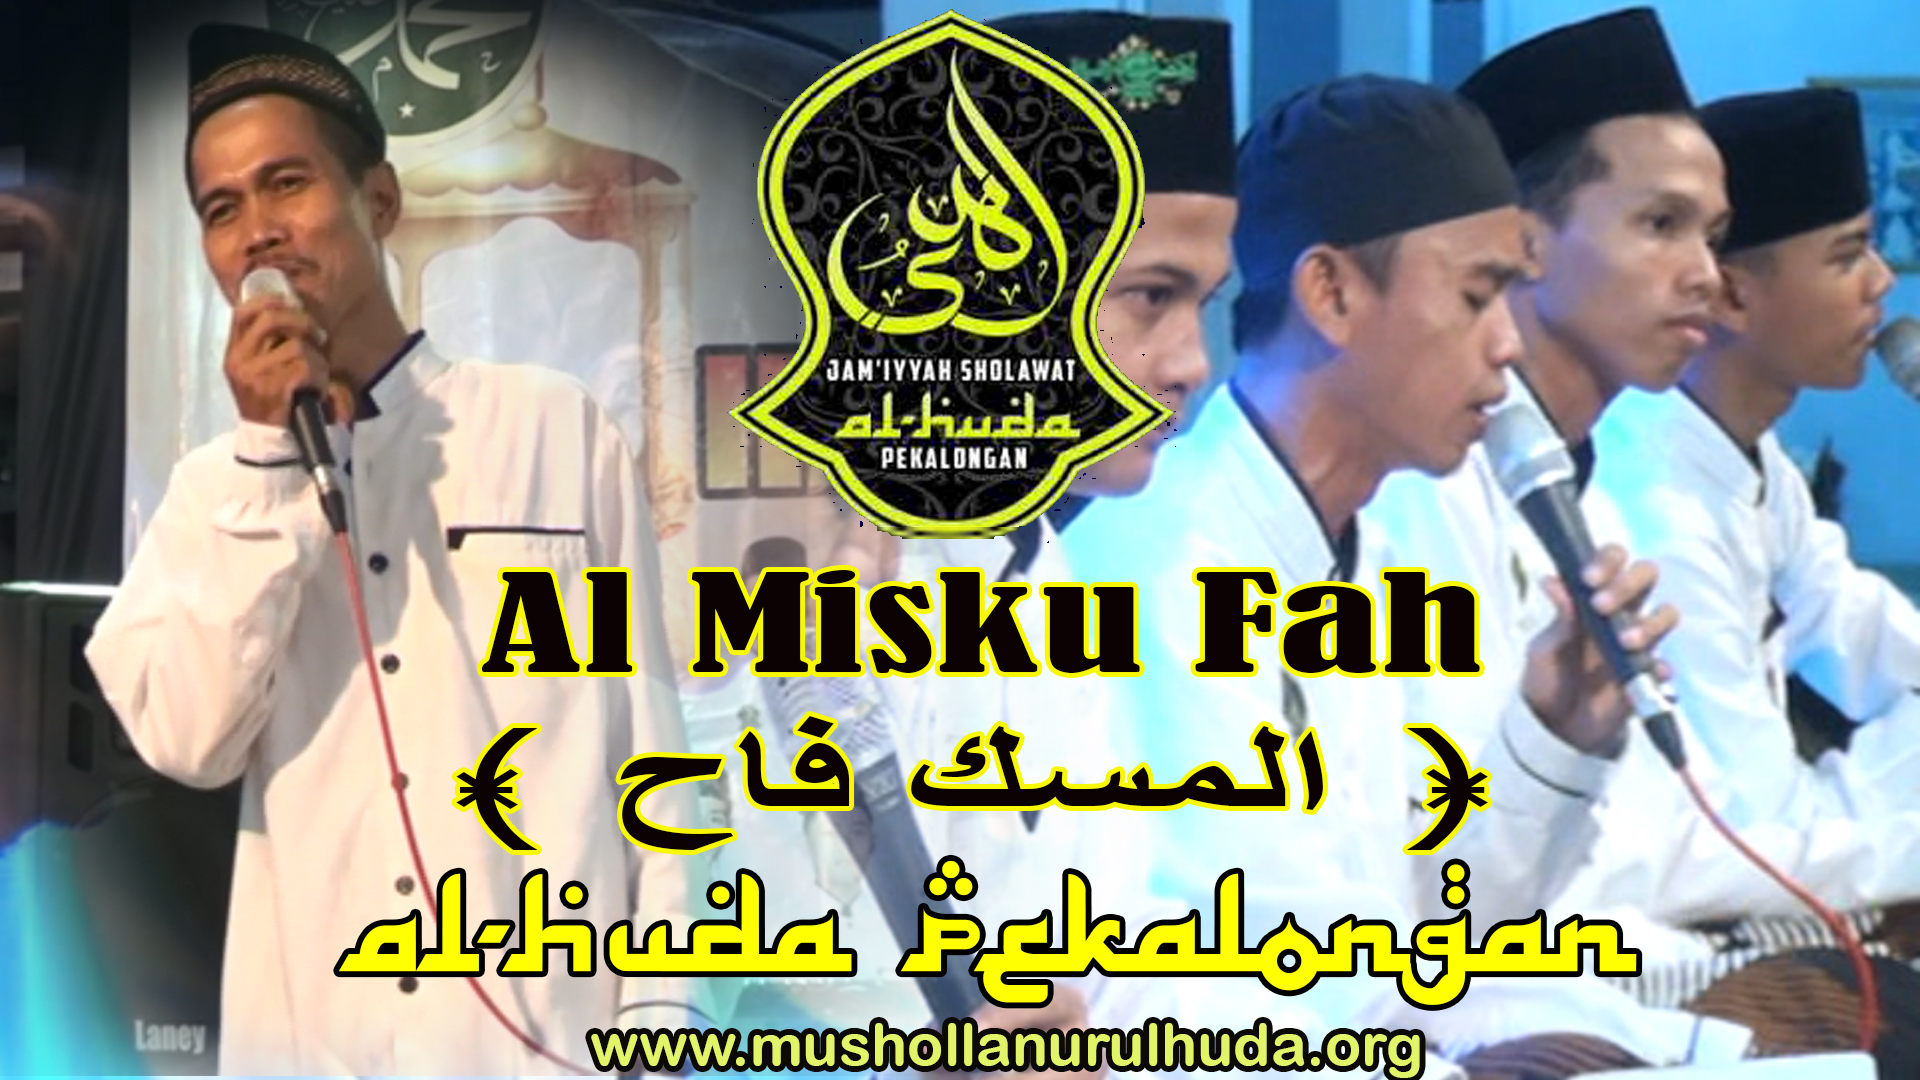 Lirik Qosidah Almisku Fah (المسك فاح) - Teks Arab dan Latin Juga Artinya